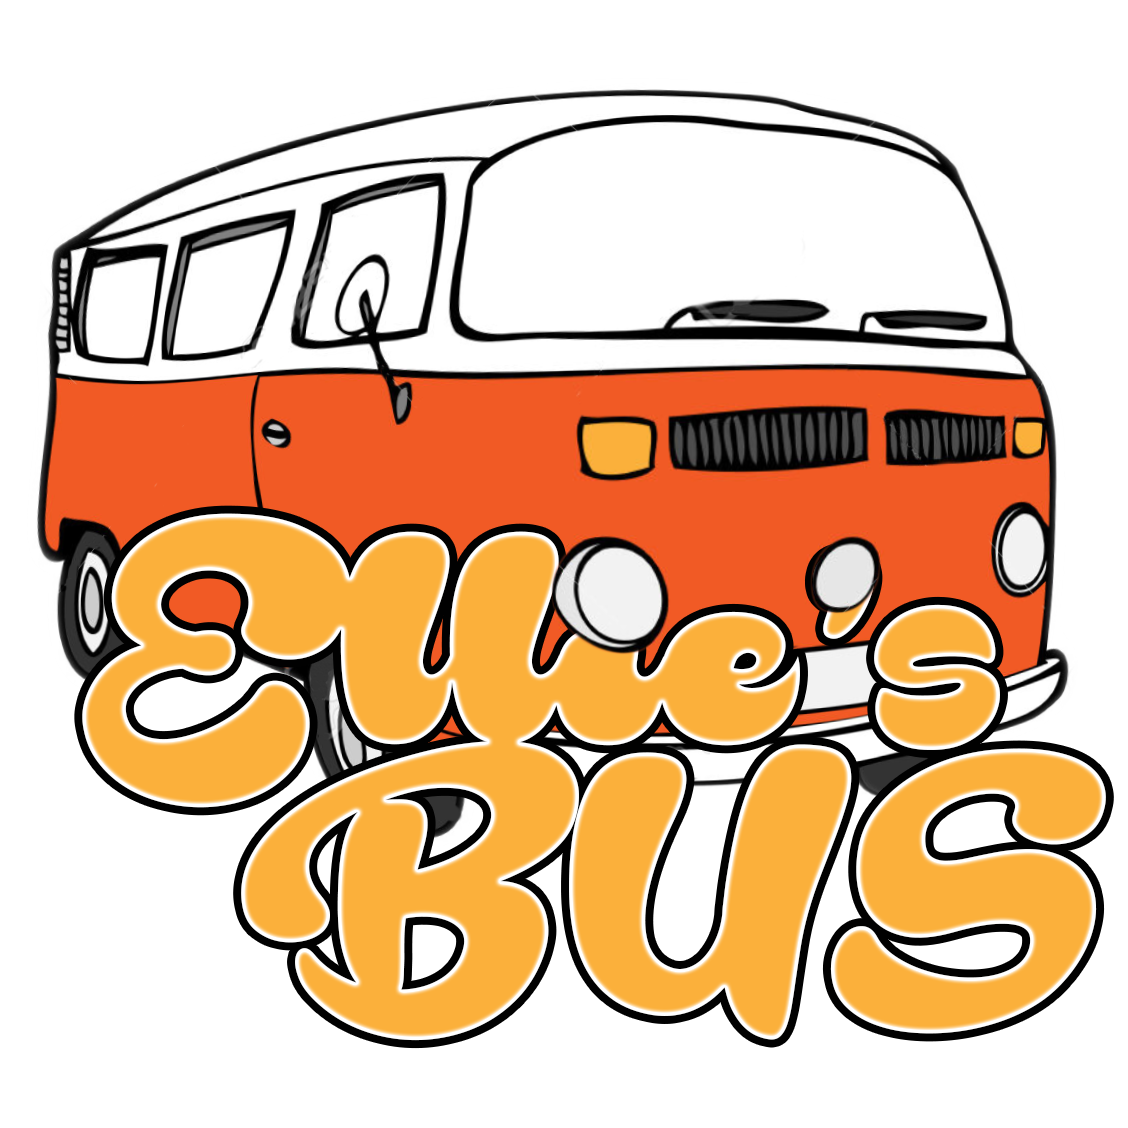 Ellie's Bus